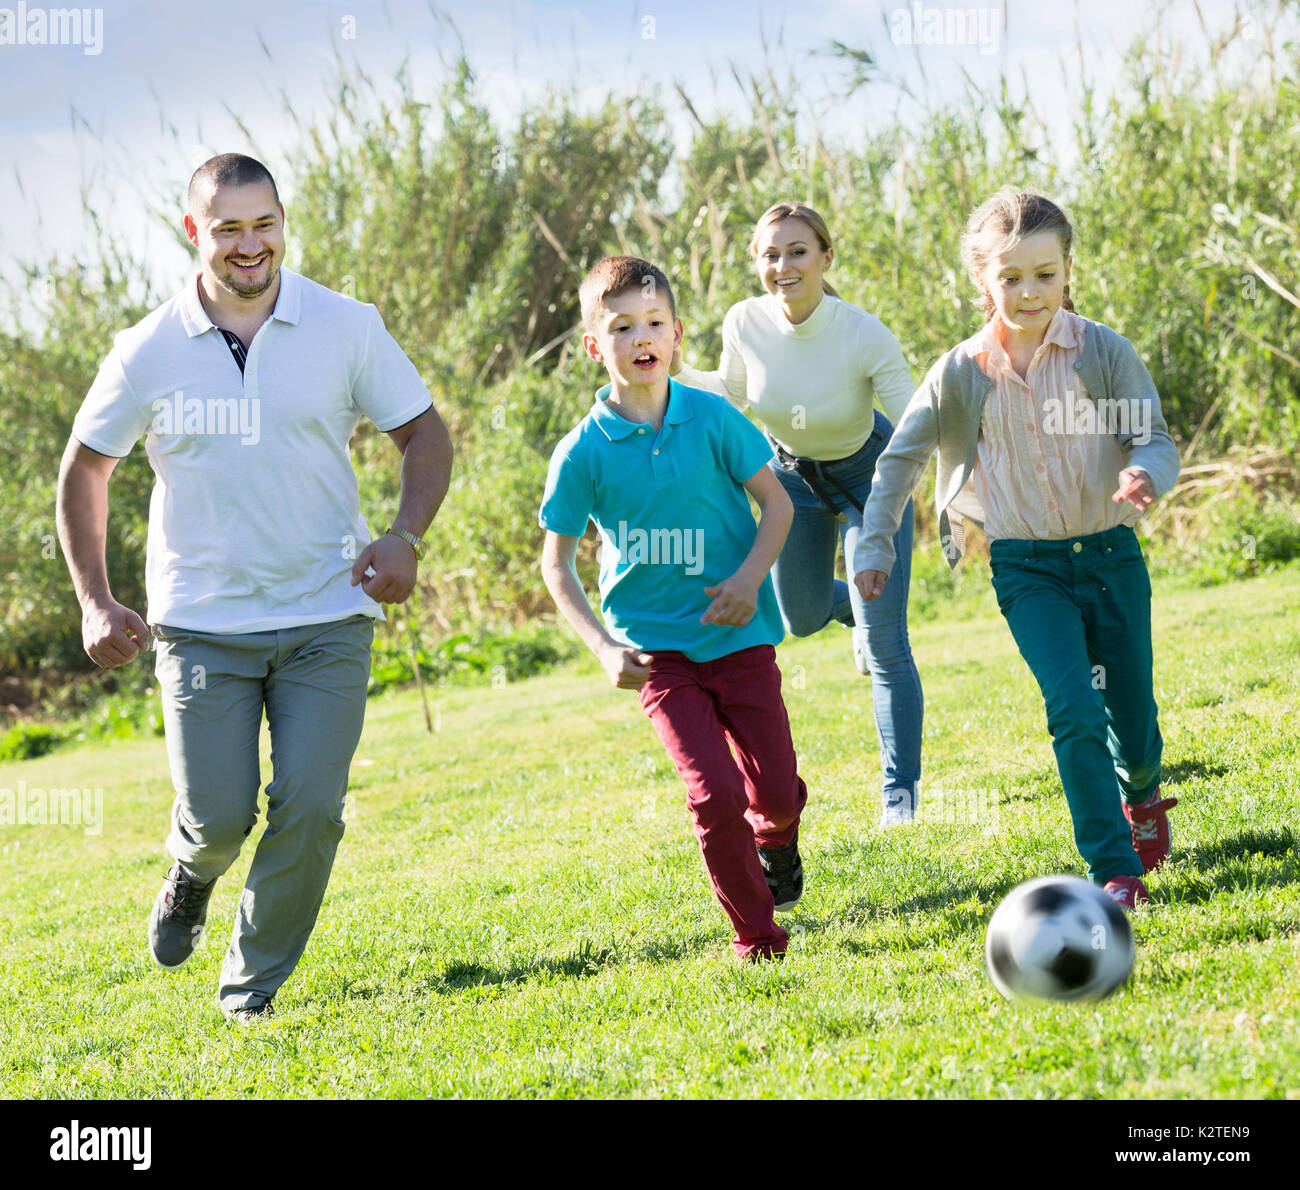 La famille de quatre personnes de race blanche jouant joyeusement dans le football together outdoors Banque D'Images